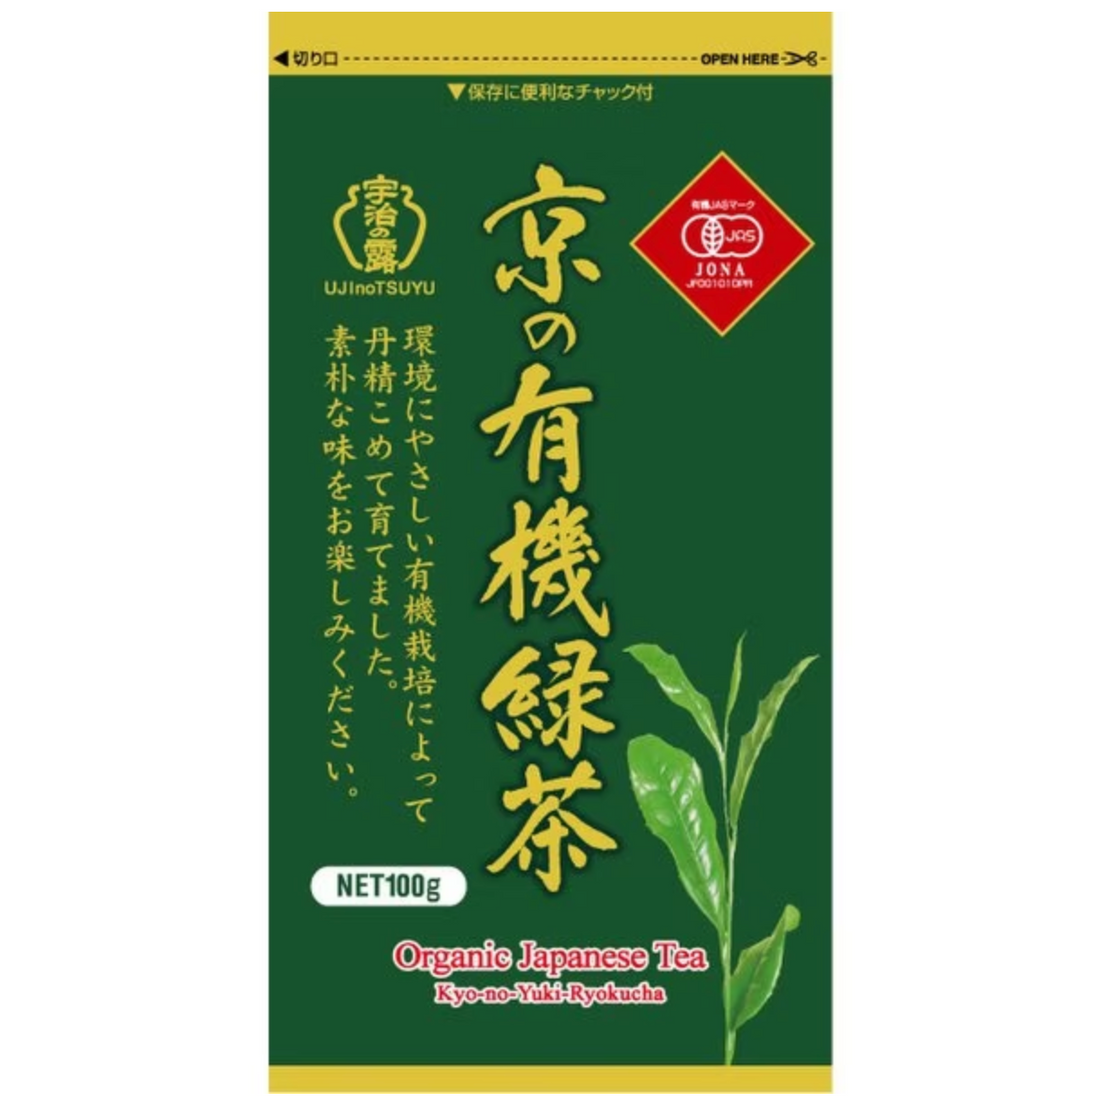 UJINOTSUYU SEICHA Kyoto organic green tea 100g